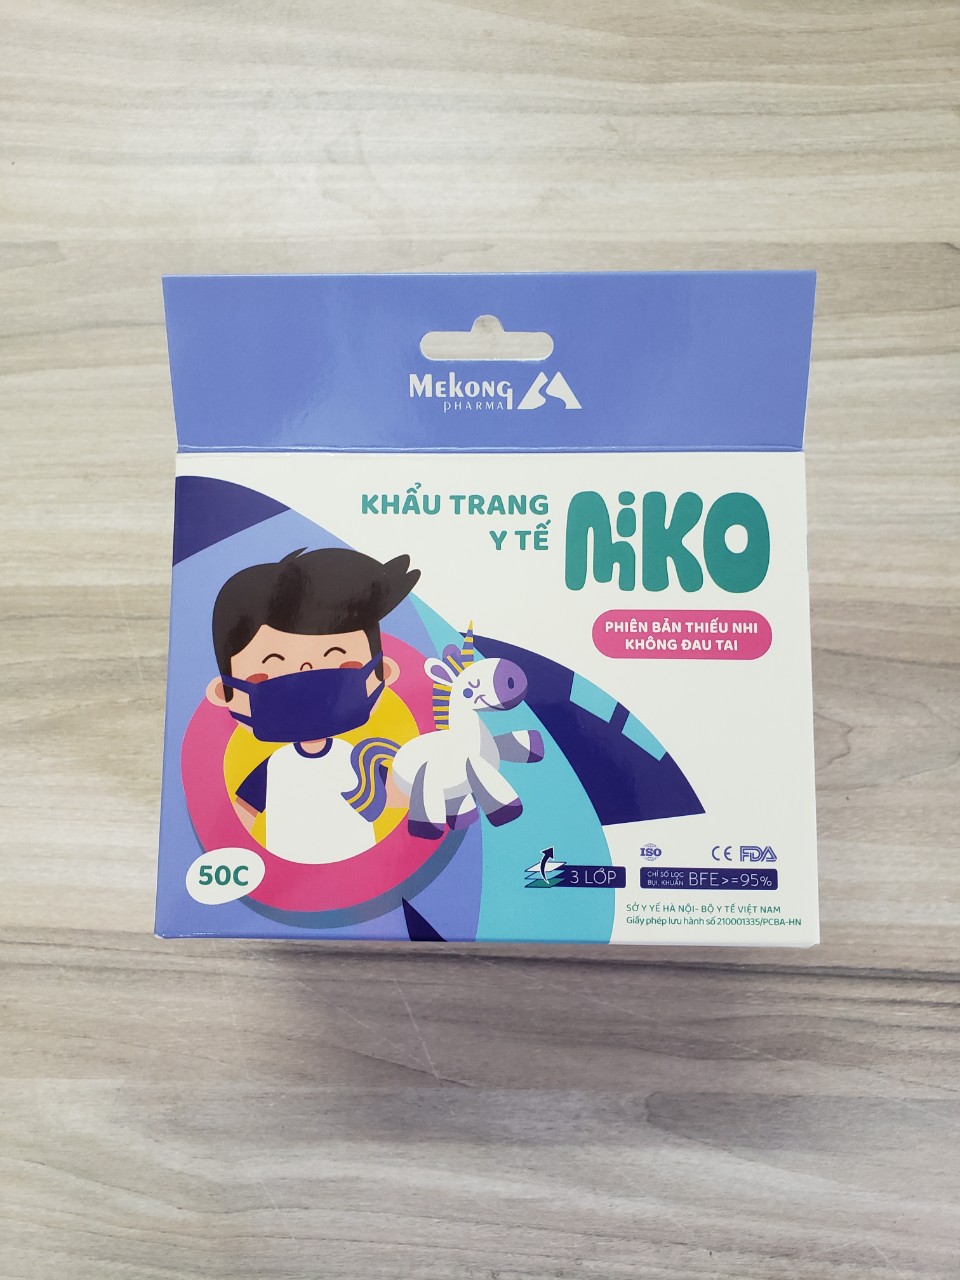 1 Kiện 50 hộp khẩu trang trẻ em MIKO cao cấp, có dây đeo mềm không đau tai.